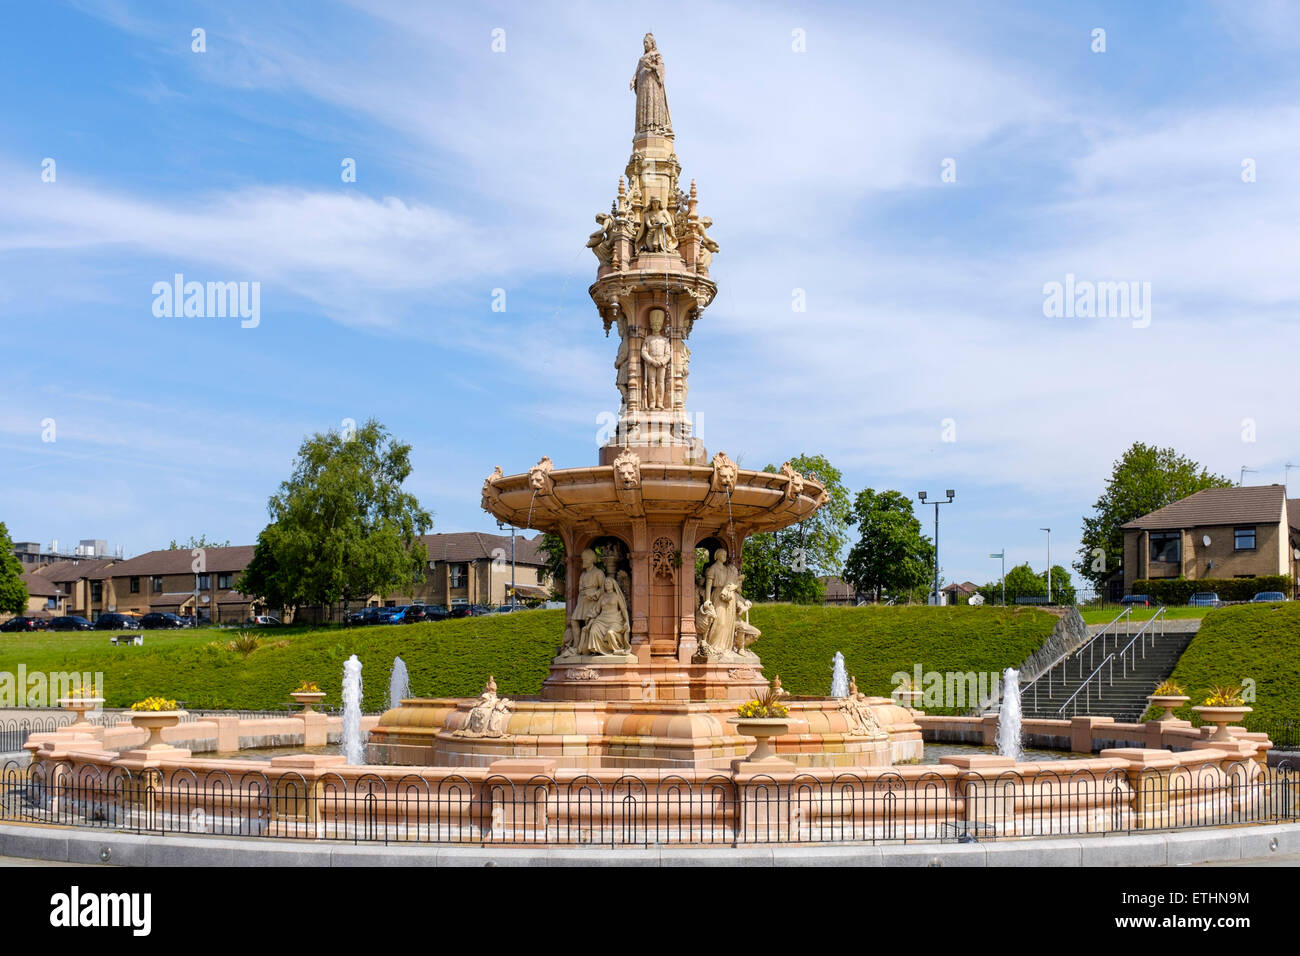 Daulton fountain at the Peoples Palace, Glasgow Green, Glasgow, Scotland, UK Stock Photo